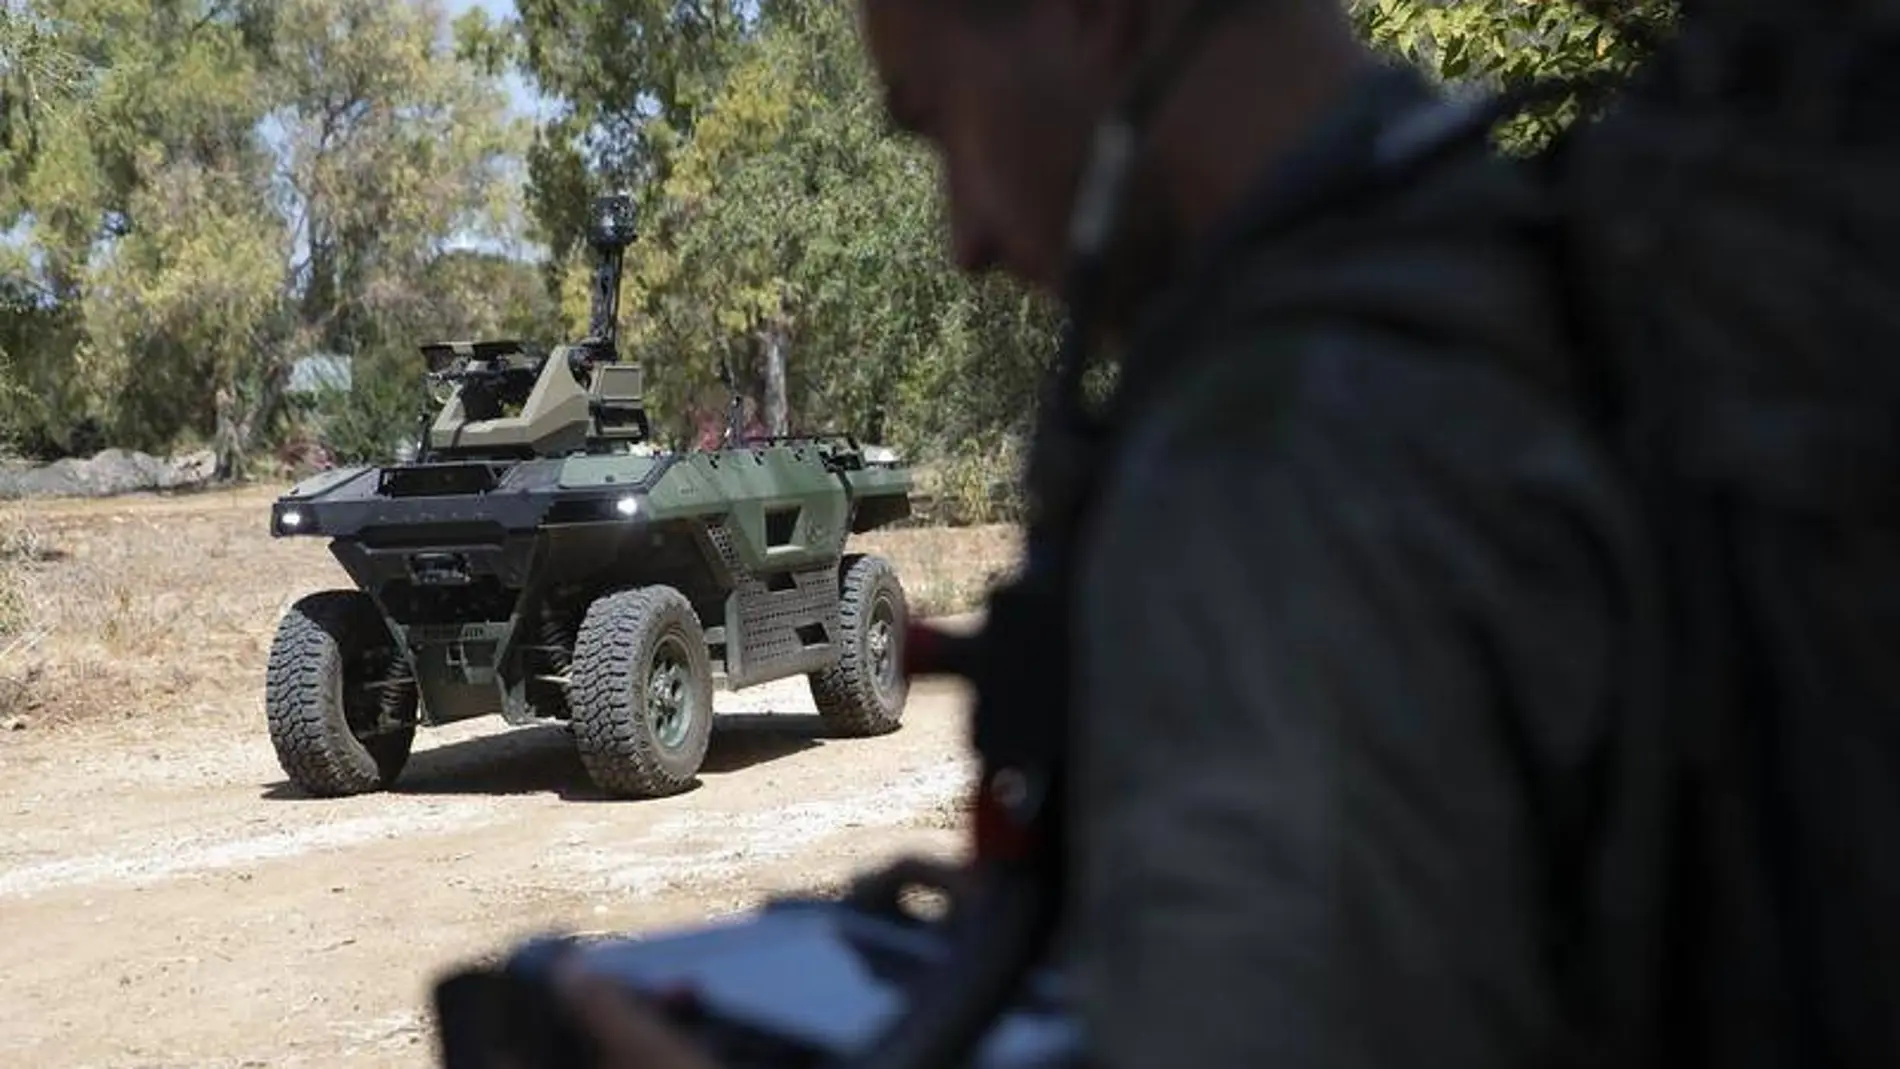 Un robot capaz de disparar y patrullar zonas de guerra diseñado por un contratista israelí